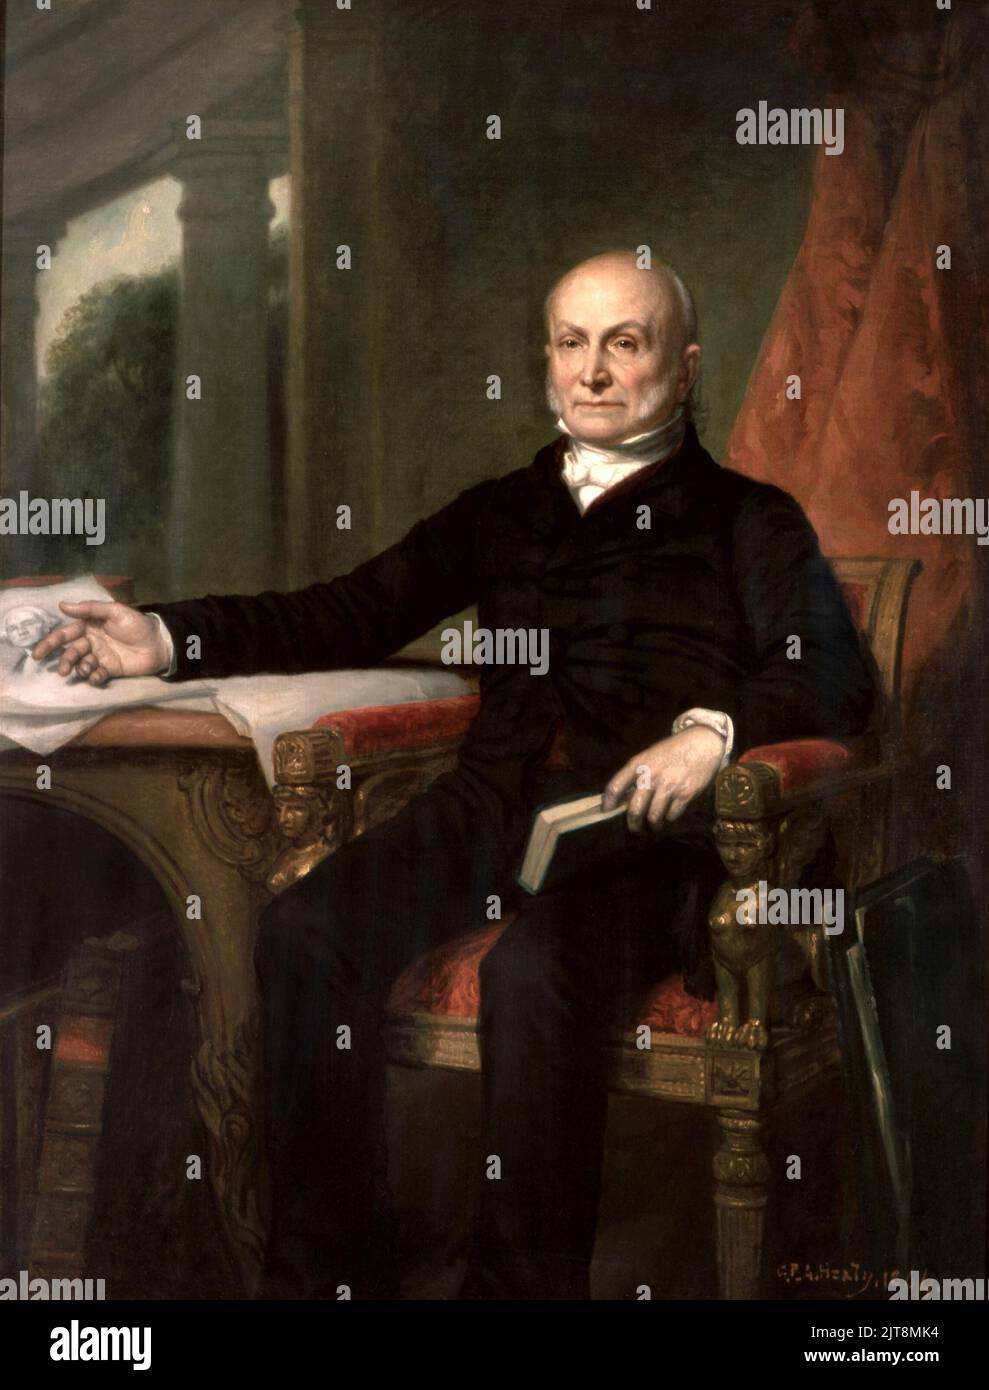 Ritratto di John Quincy Adams, sesto presidente degli Stati Uniti. Il dipinto è di George Peter Alexander Healy, c. 1858. Foto Stock